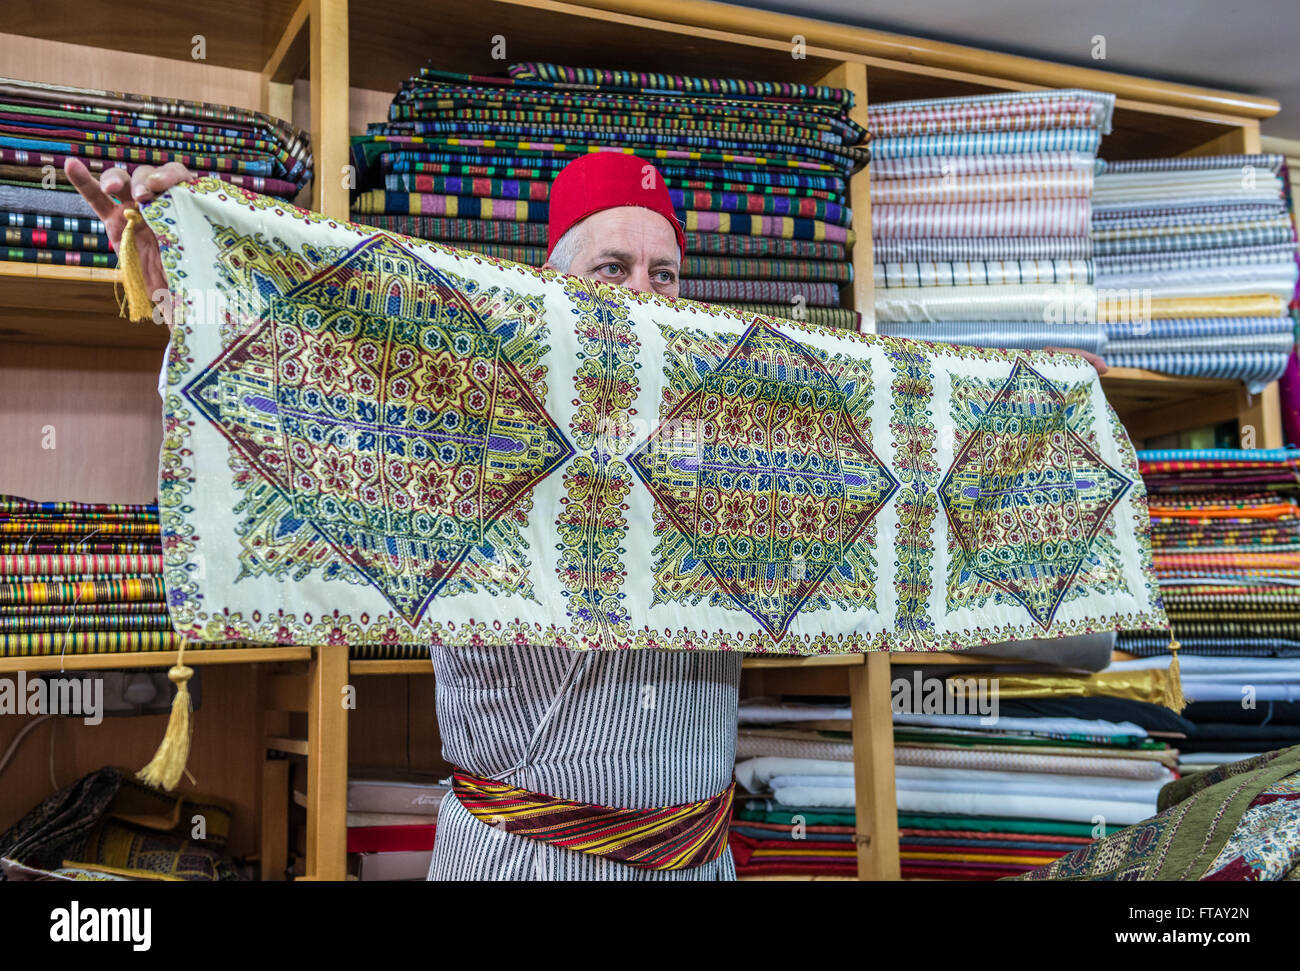 Abu Khalaf, comerciante de telas importadas de oriente, muestra de textiles en su tienda en un mercado de la Ciudad Vieja de Jerusalén, Israel Fotografía de stock - Alamy